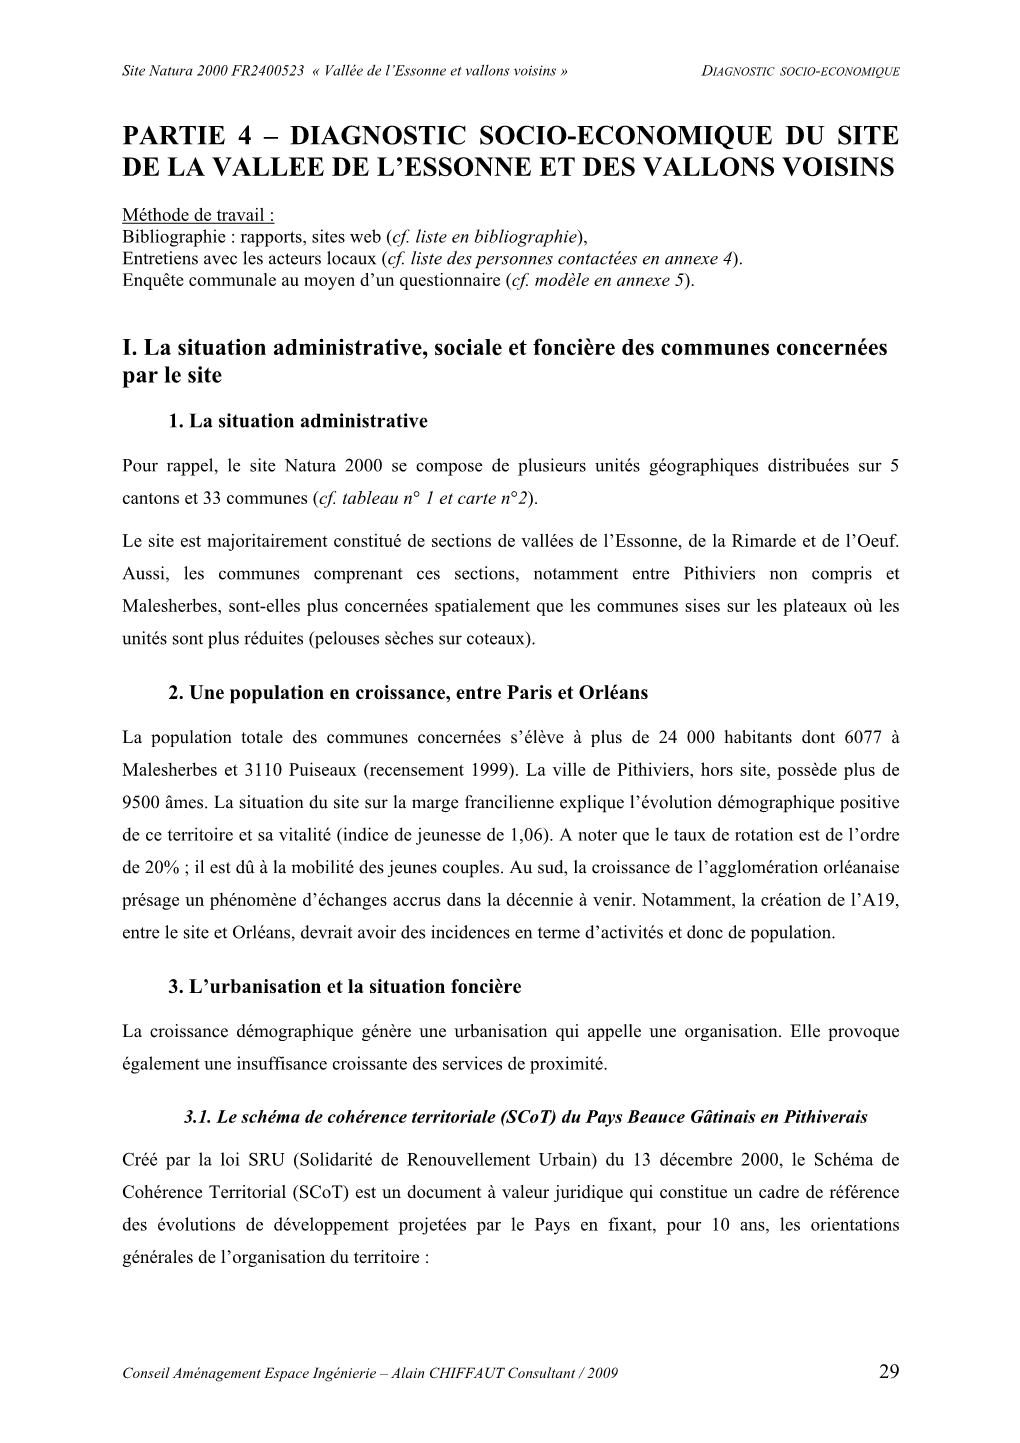 Partie 4 – Diagnostic Socio-Economique Du Site De La Vallee De L’Essonne Et Des Vallons Voisins